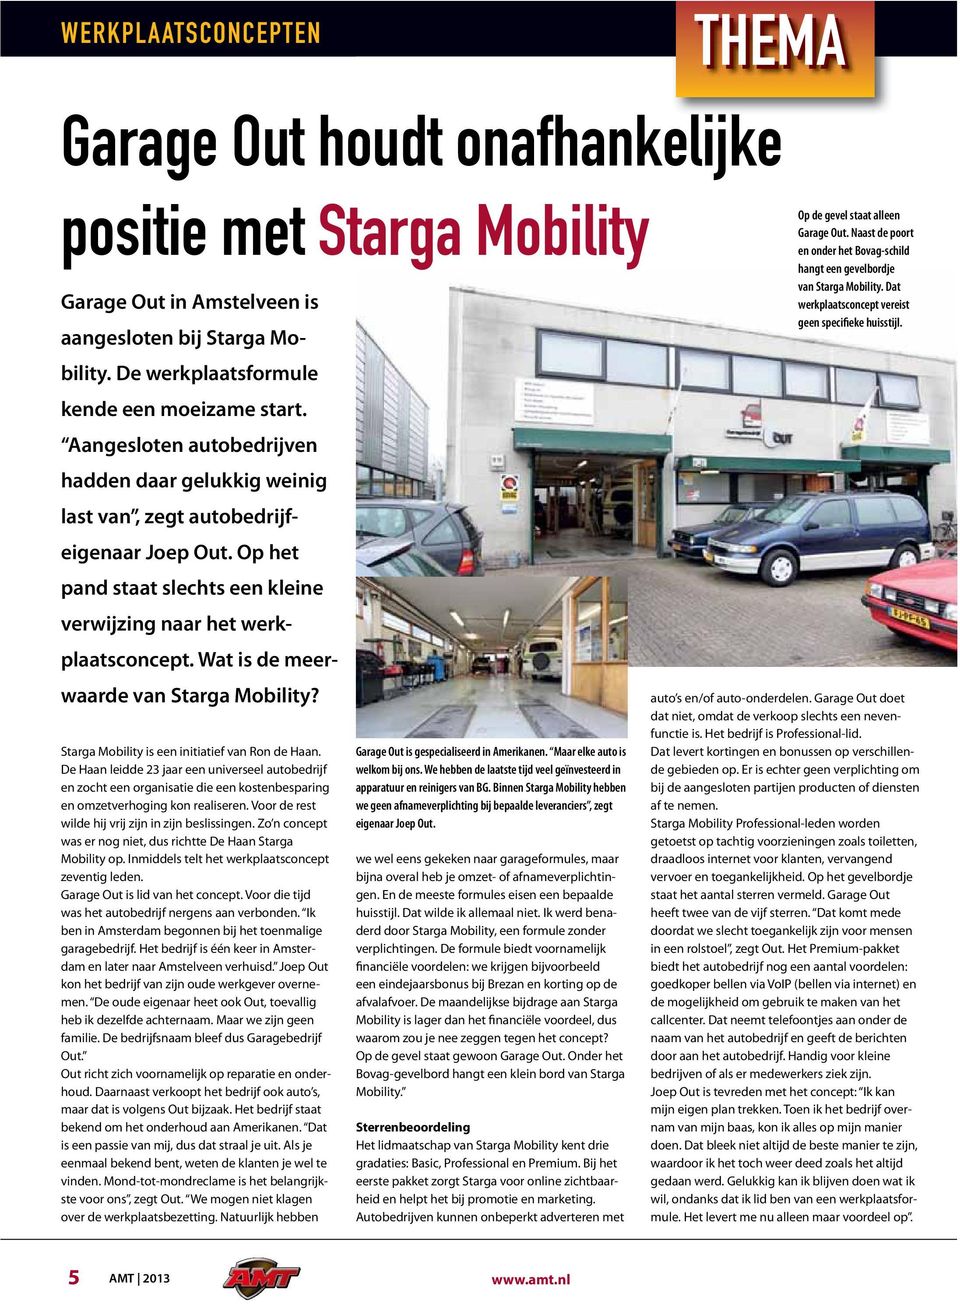 Wat is de meerwaarde van Starga Mobility? Starga Mobility is een initiatief van Ron de Haan.